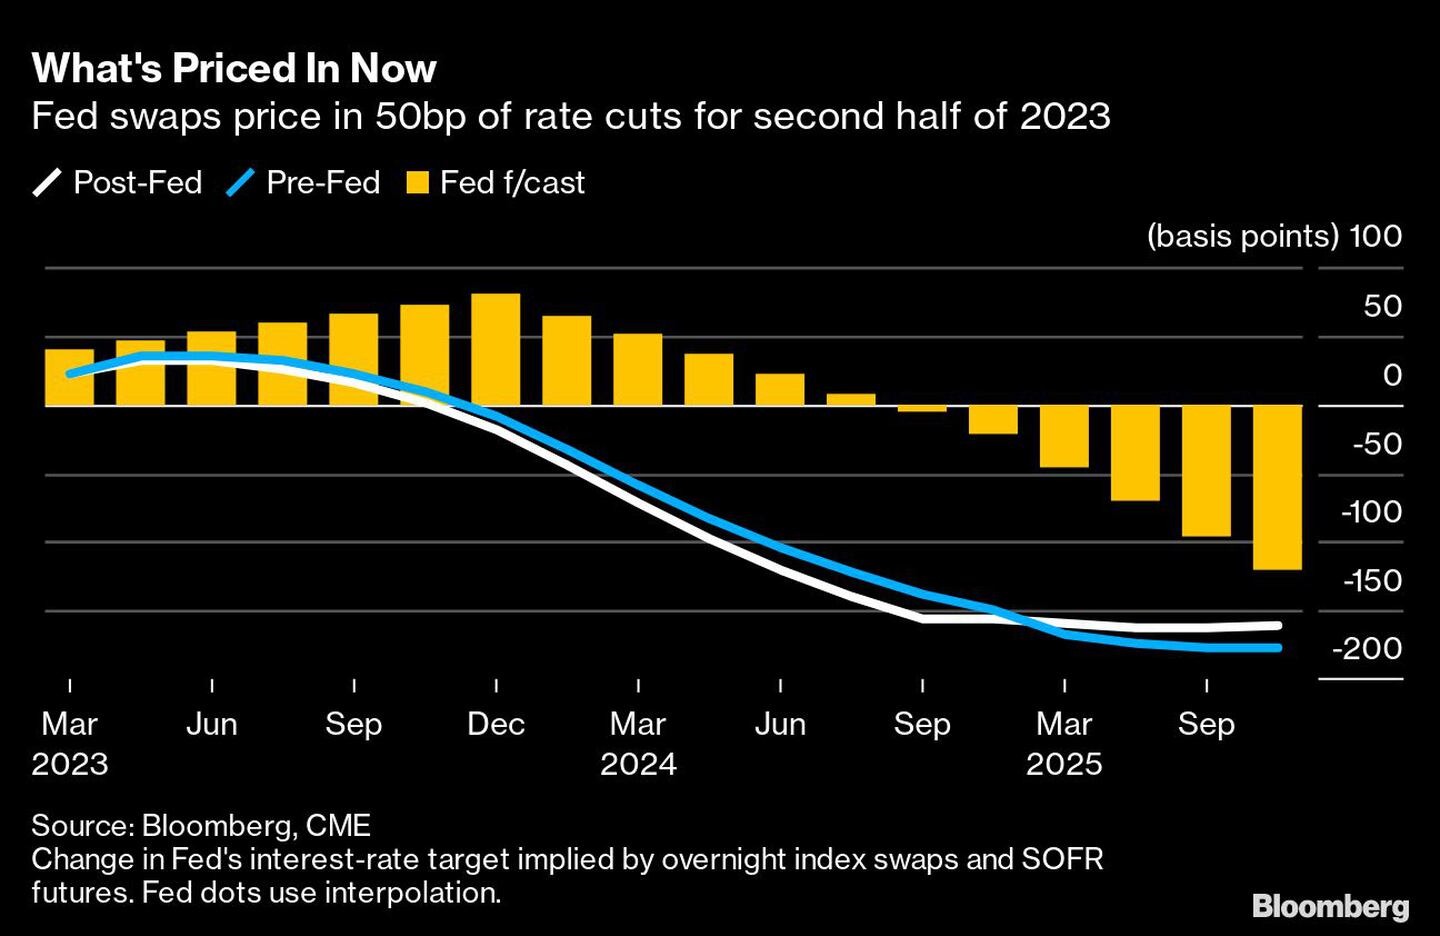 Los swaps de la Fed prevén recortes de tasas de 50 puntos básicos para el segundo semestre de 2023dfd